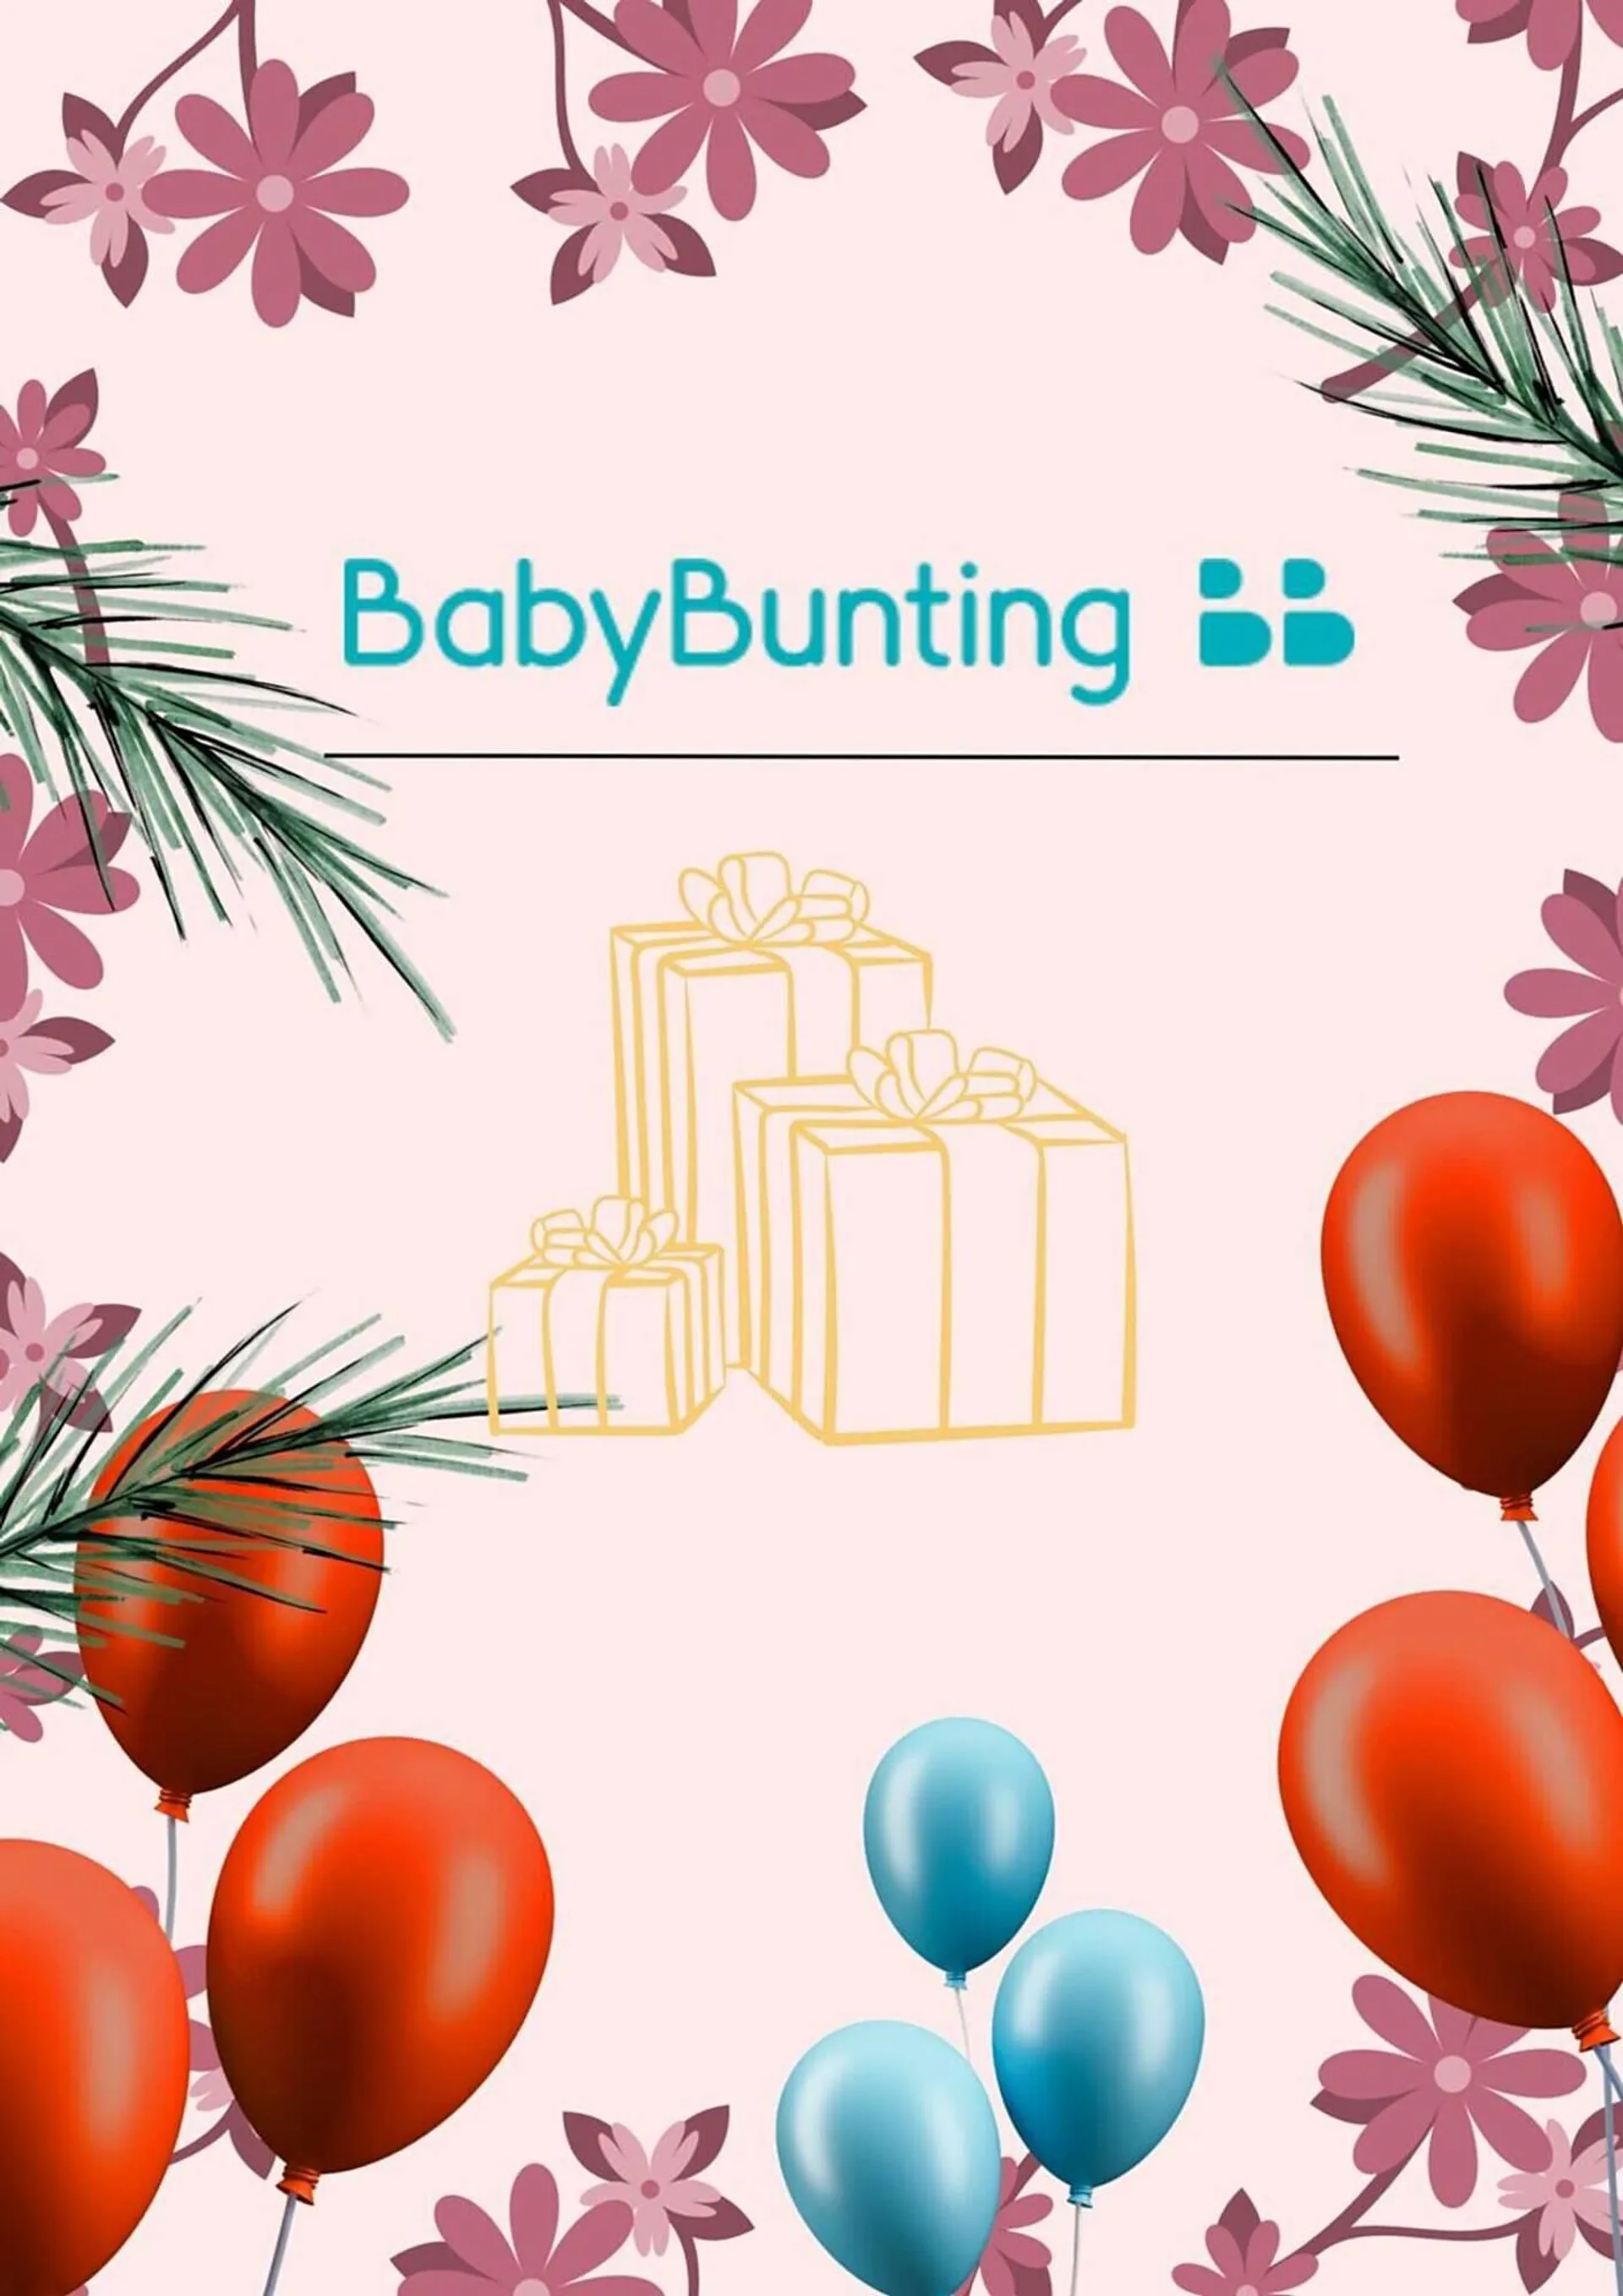 Baby Bunting catalogue - 1